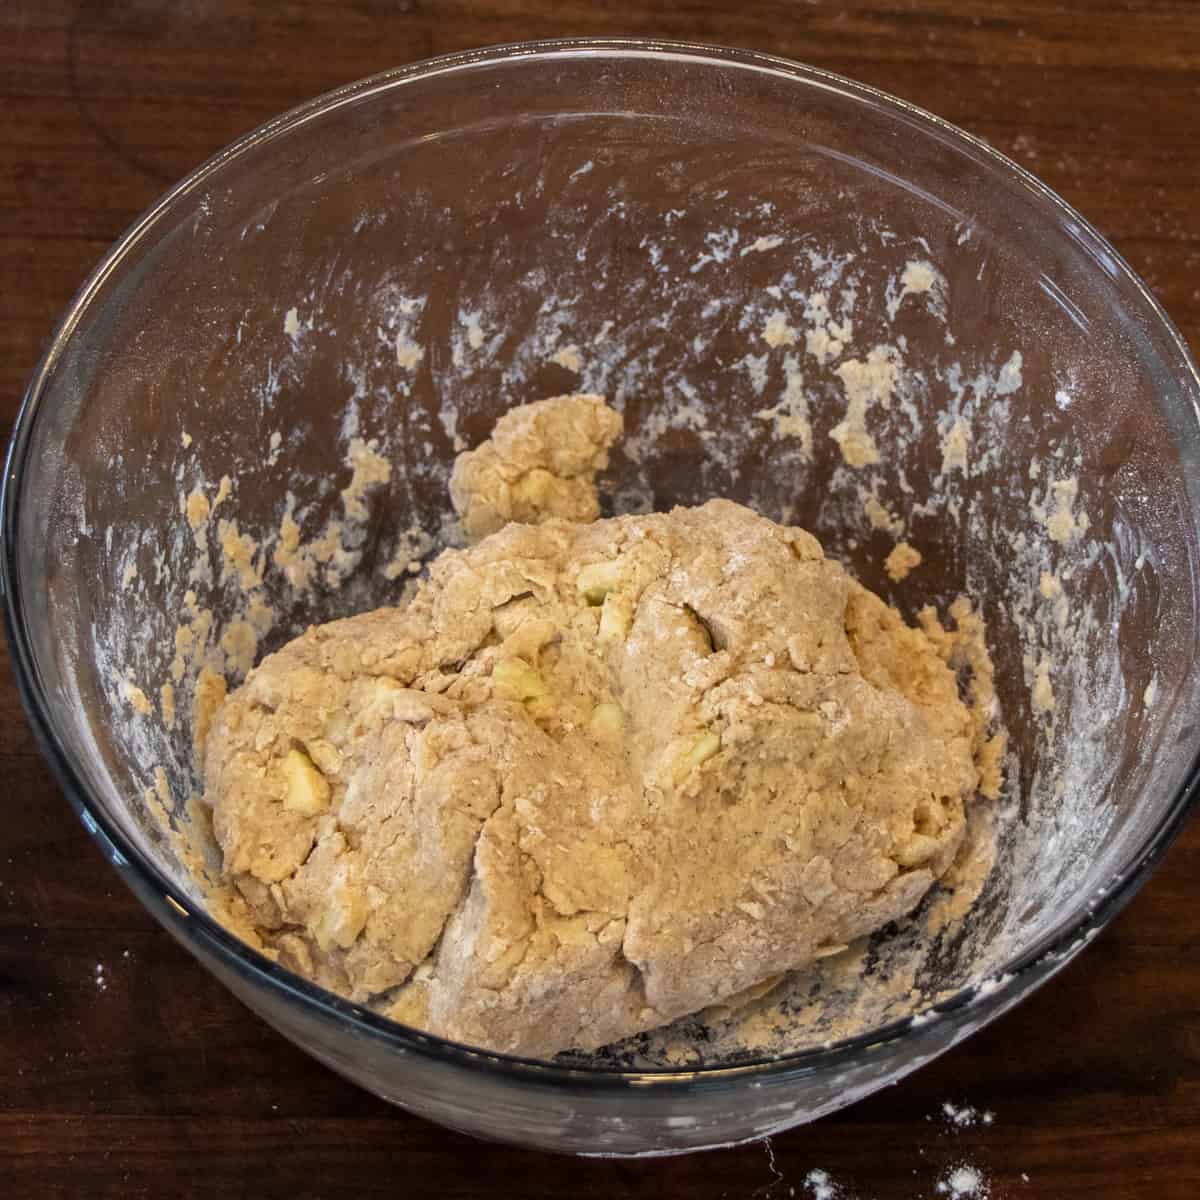 A bowl of scone dough.